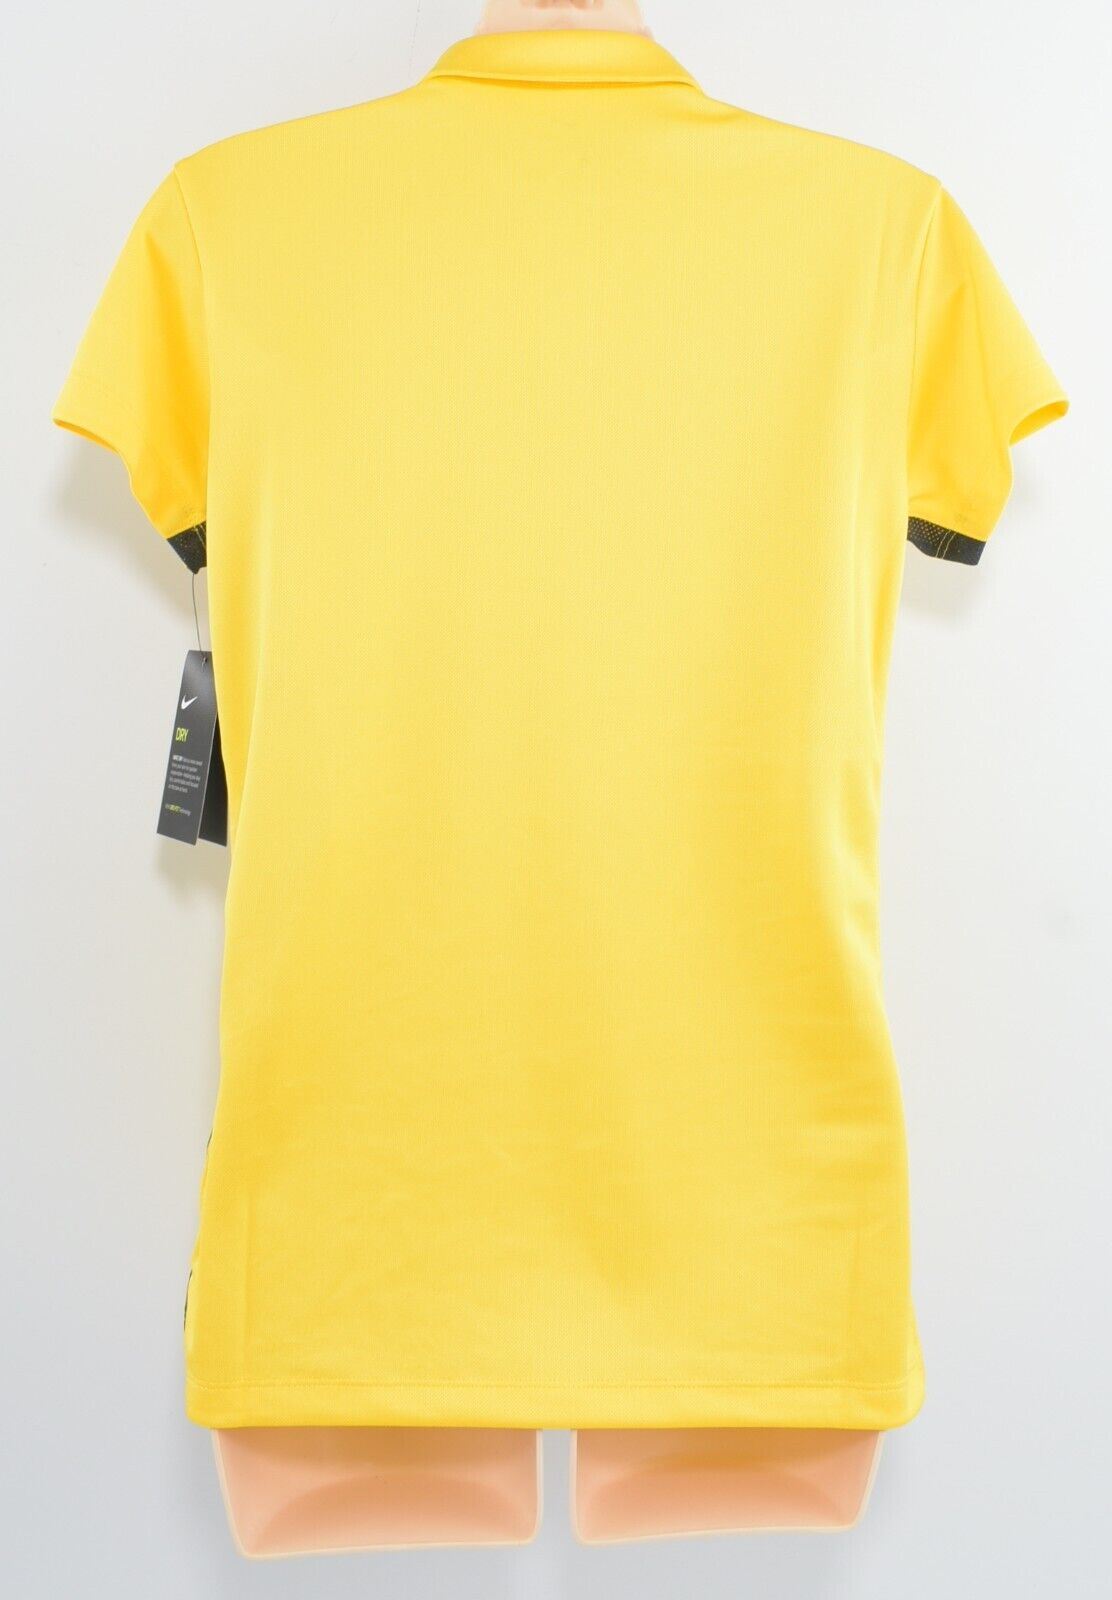 NIKE Dri-Fit Women's ACADEMIC POLO Shirt, T-shirt, Yellow, size S /UK 10